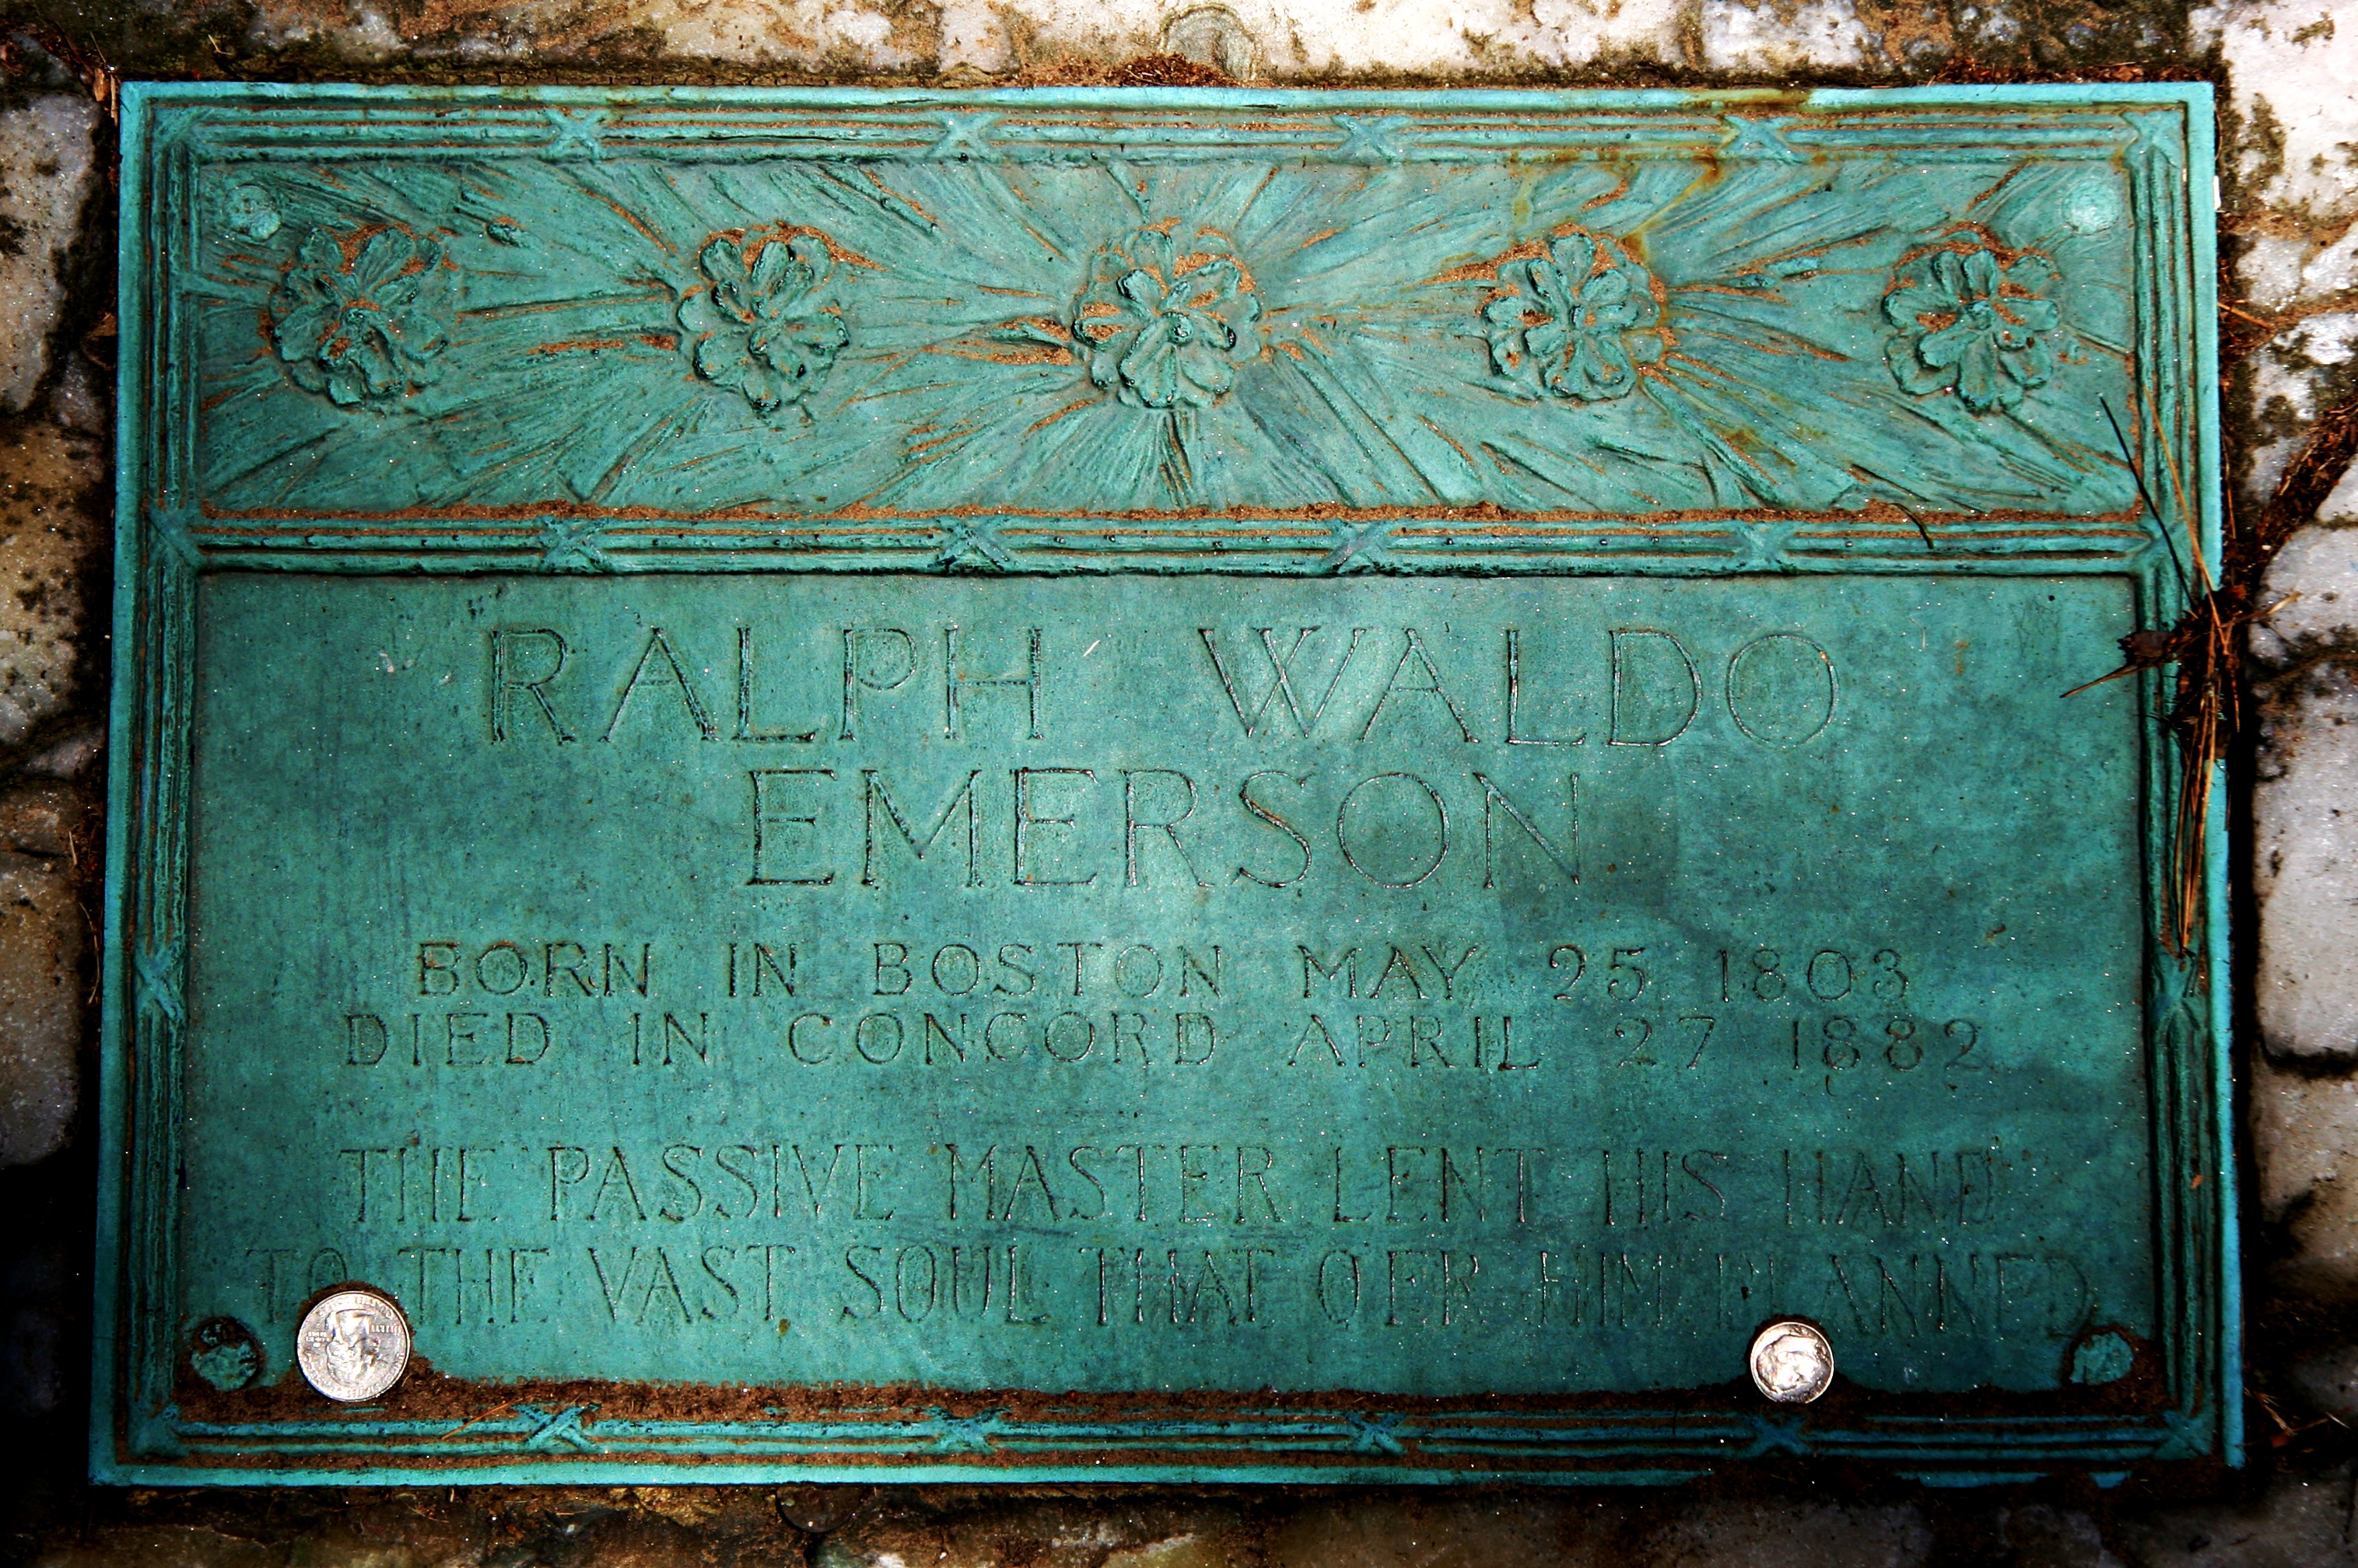 Bronze Plaque on ralph Waldo Emerson's Grave, Concord MA